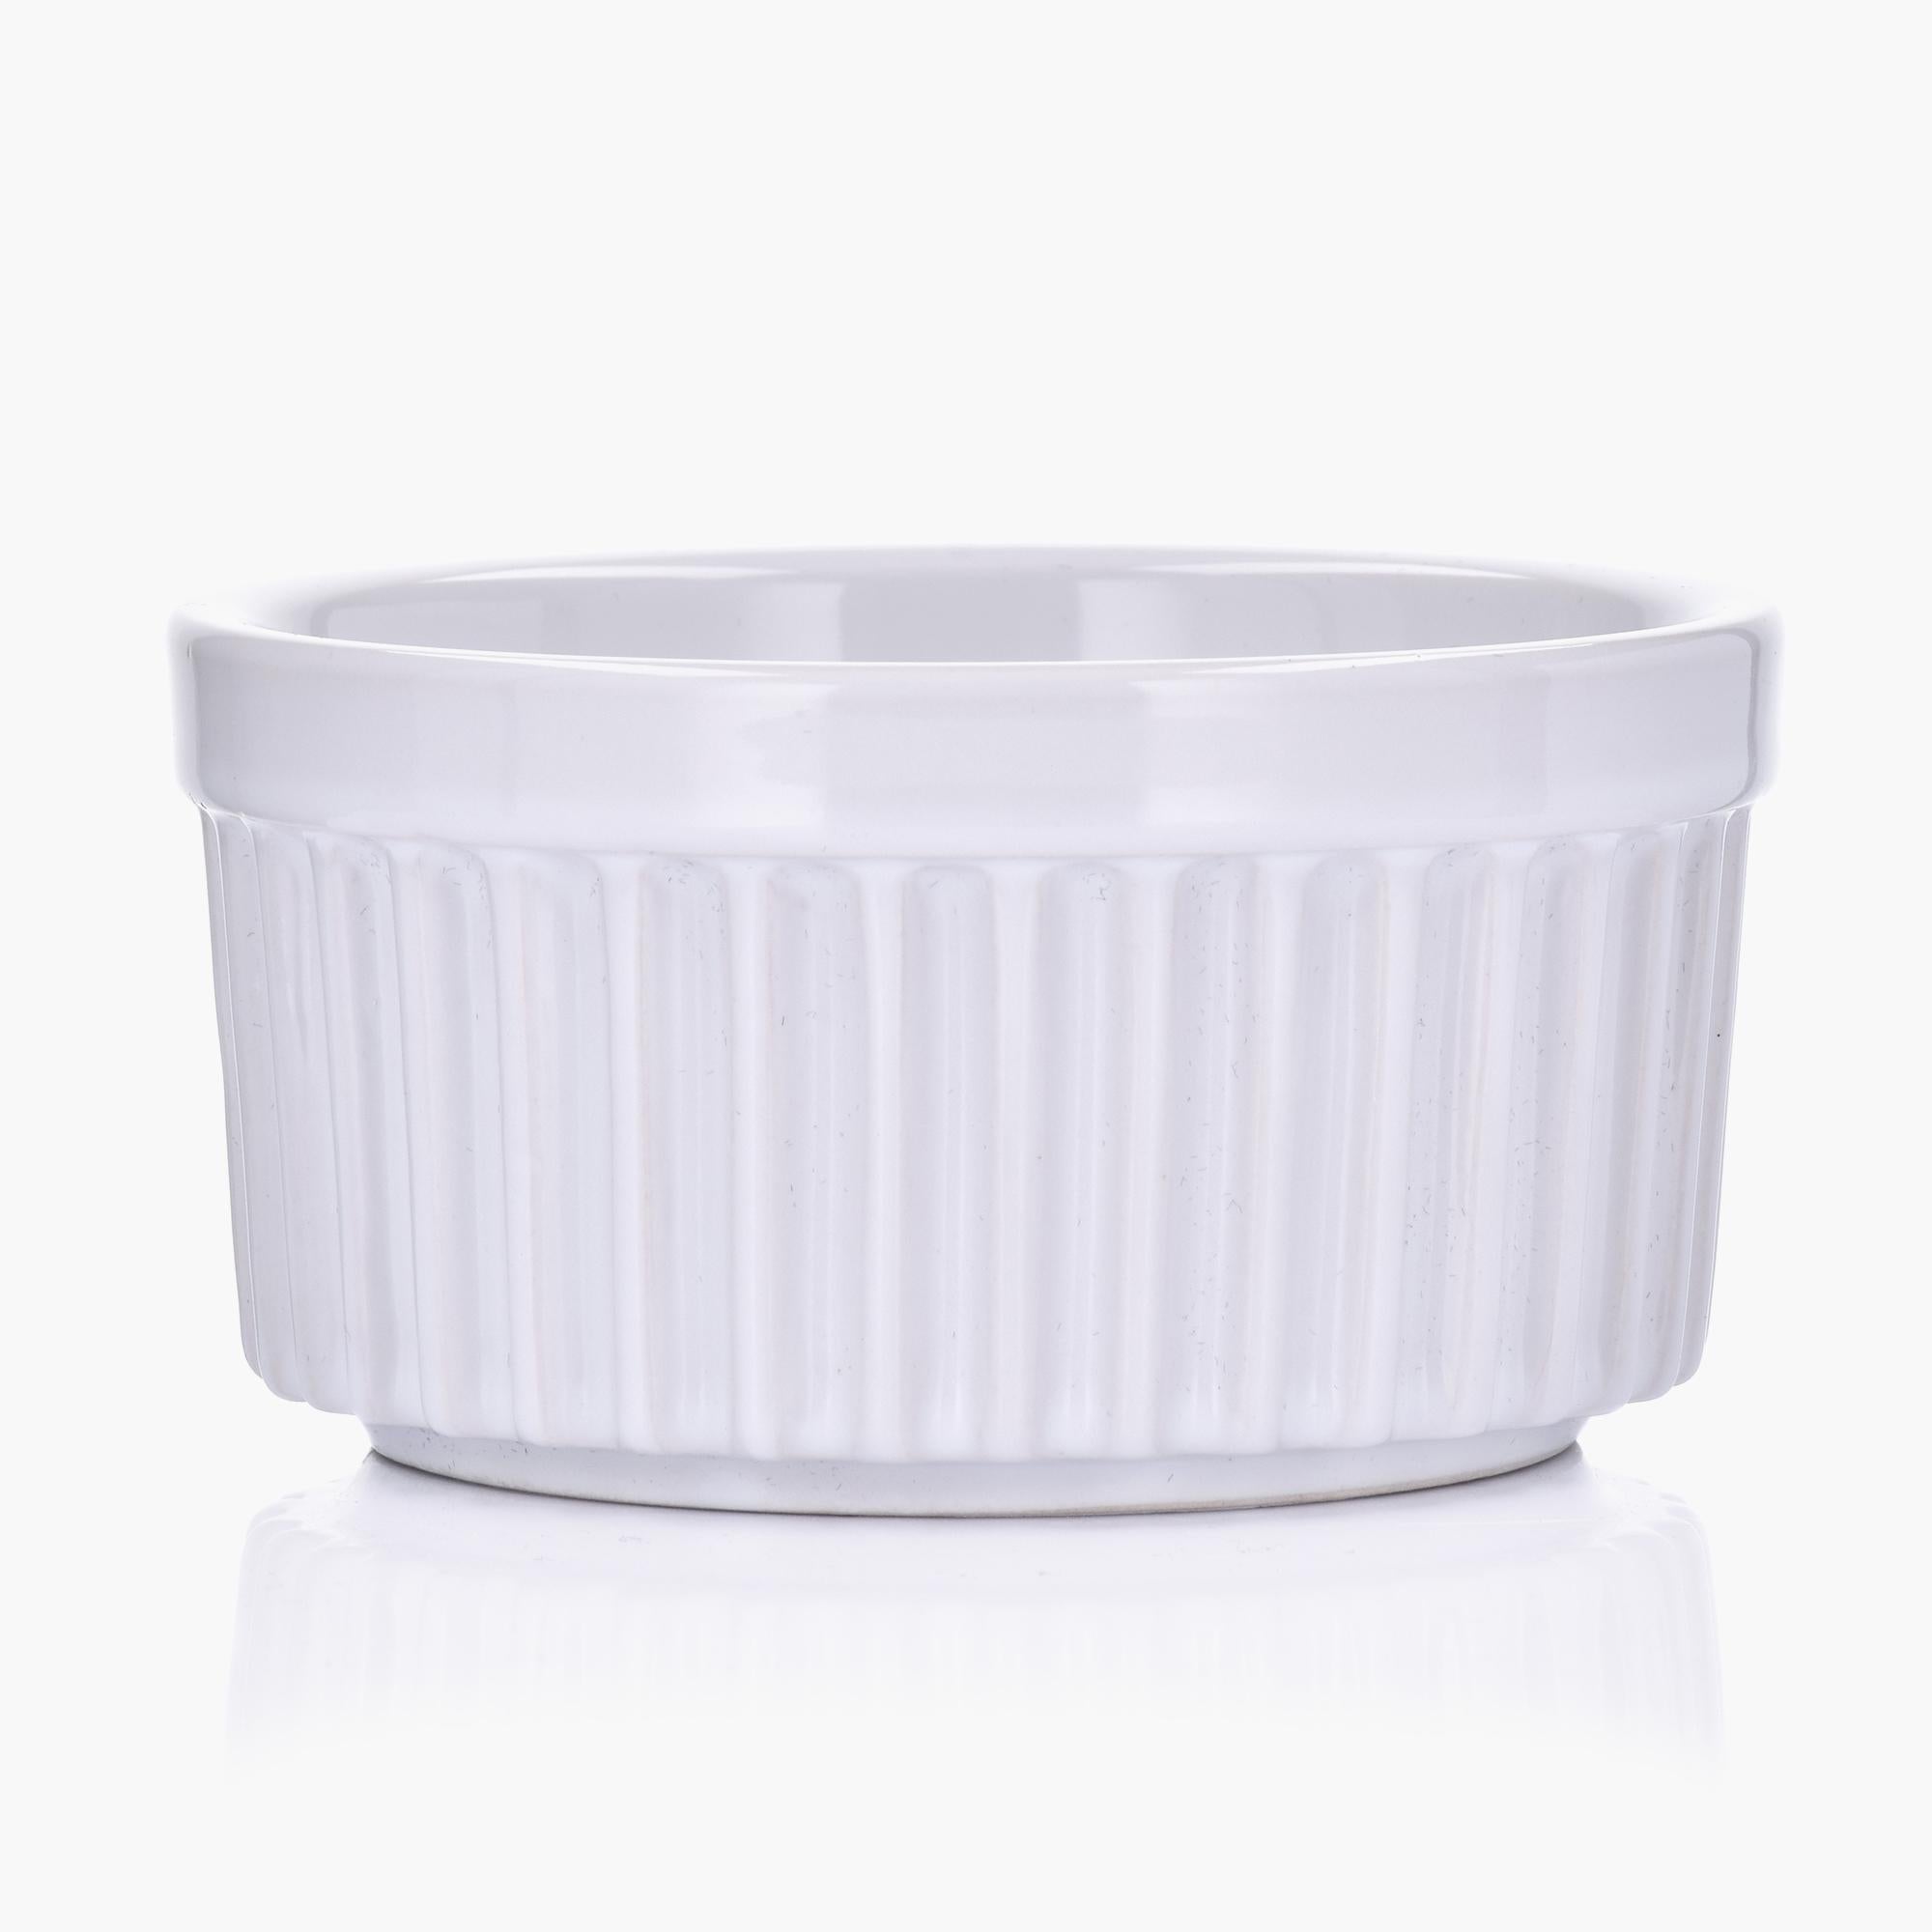 4-Inch White Ceramic Ramekin